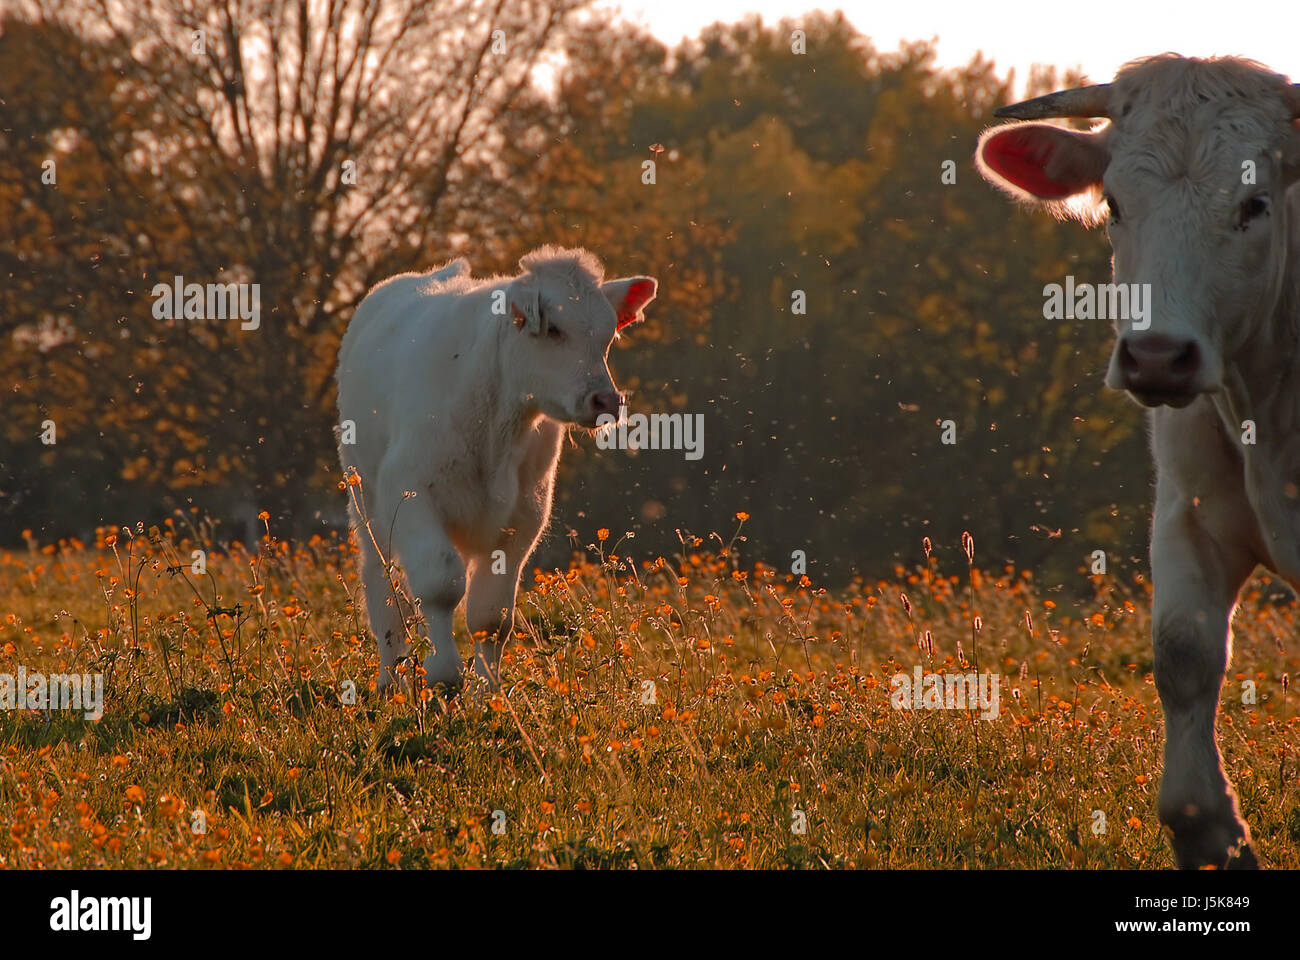 Insetti agricoltura agricoltura contro-luce luce della sera vacche bovini di allevamento Foto Stock